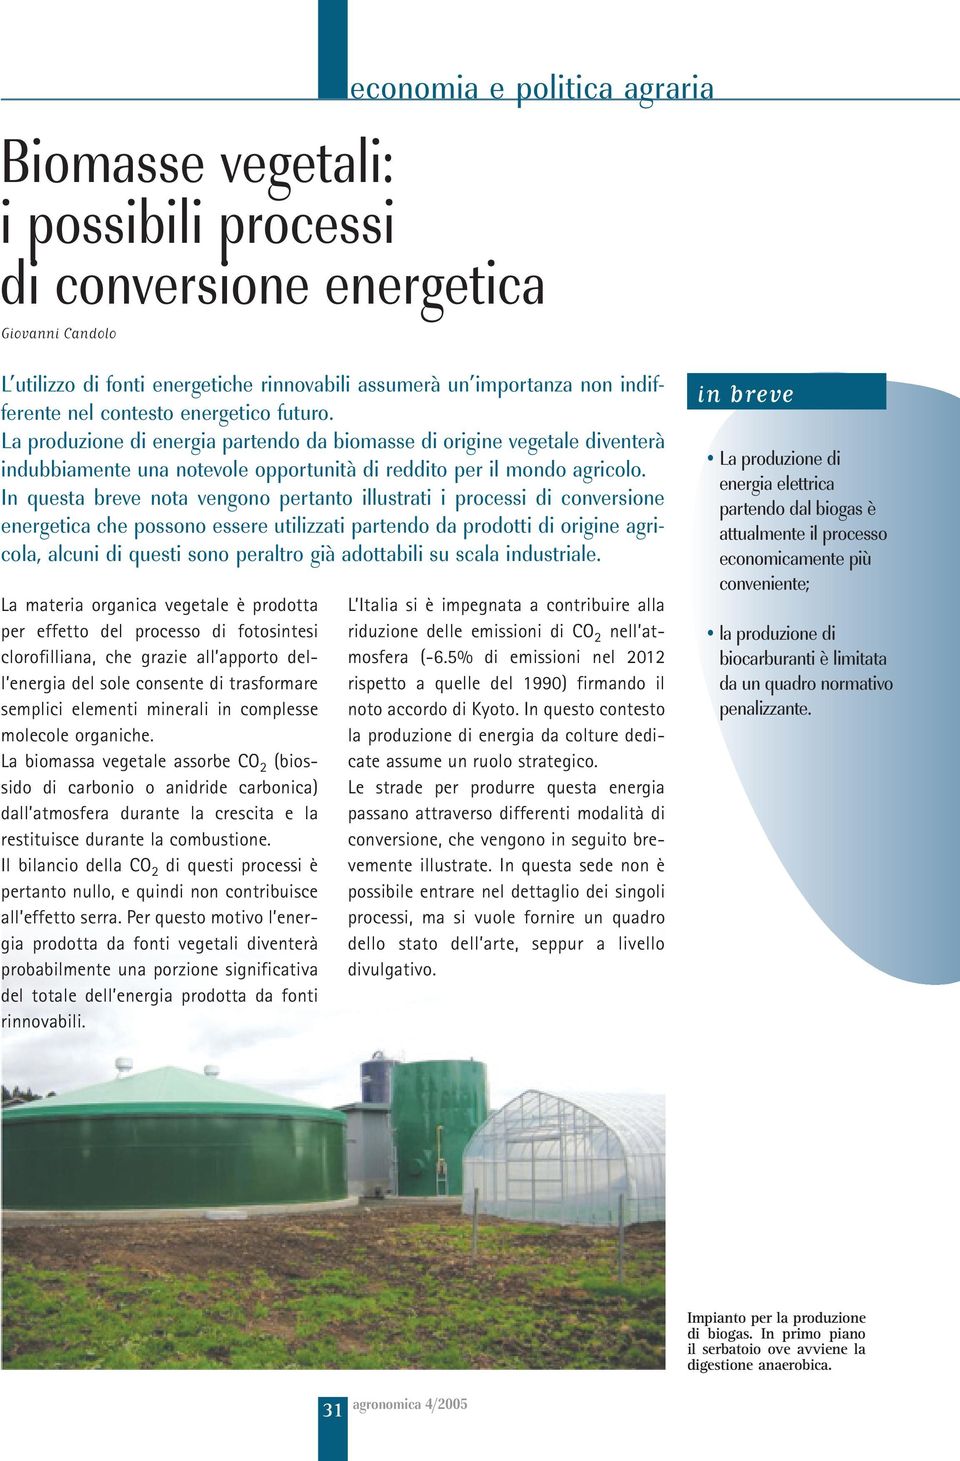 In questa breve nota vengono pertanto illustrati i processi di conversione energetica che possono essere utilizzati partendo da prodotti di origine agricola, alcuni di questi sono peraltro già